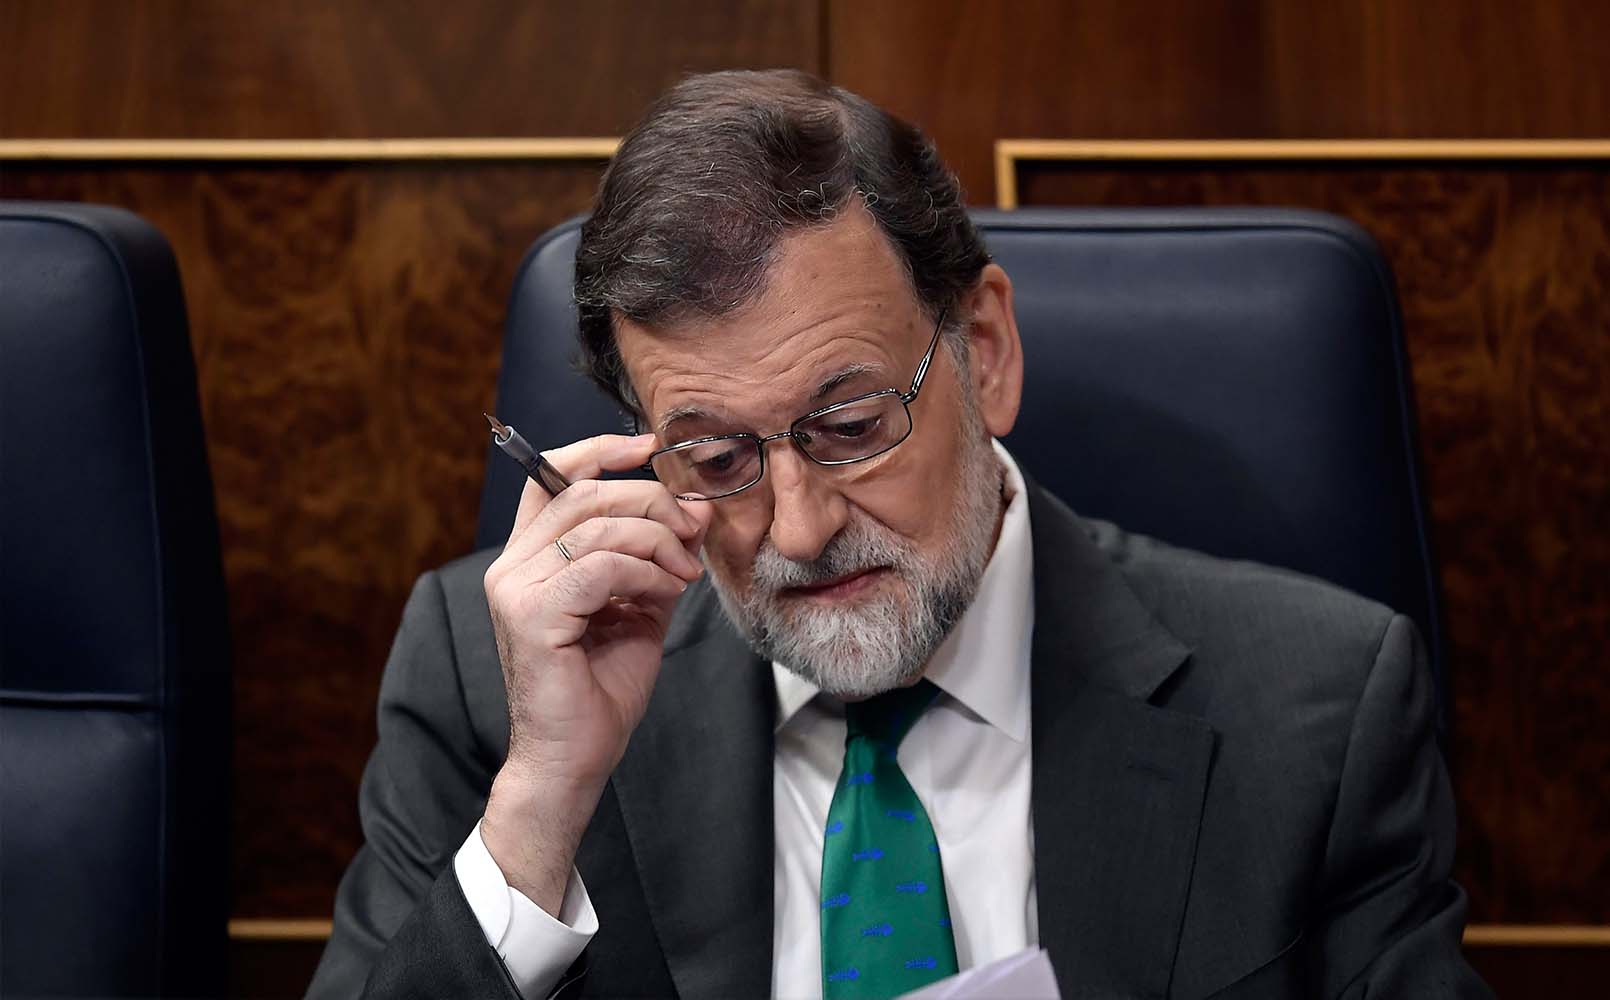 Los mejores memes sobre la moción de censura: "Se larga Rajoy, ahora a echar a Pedro Sánchez"